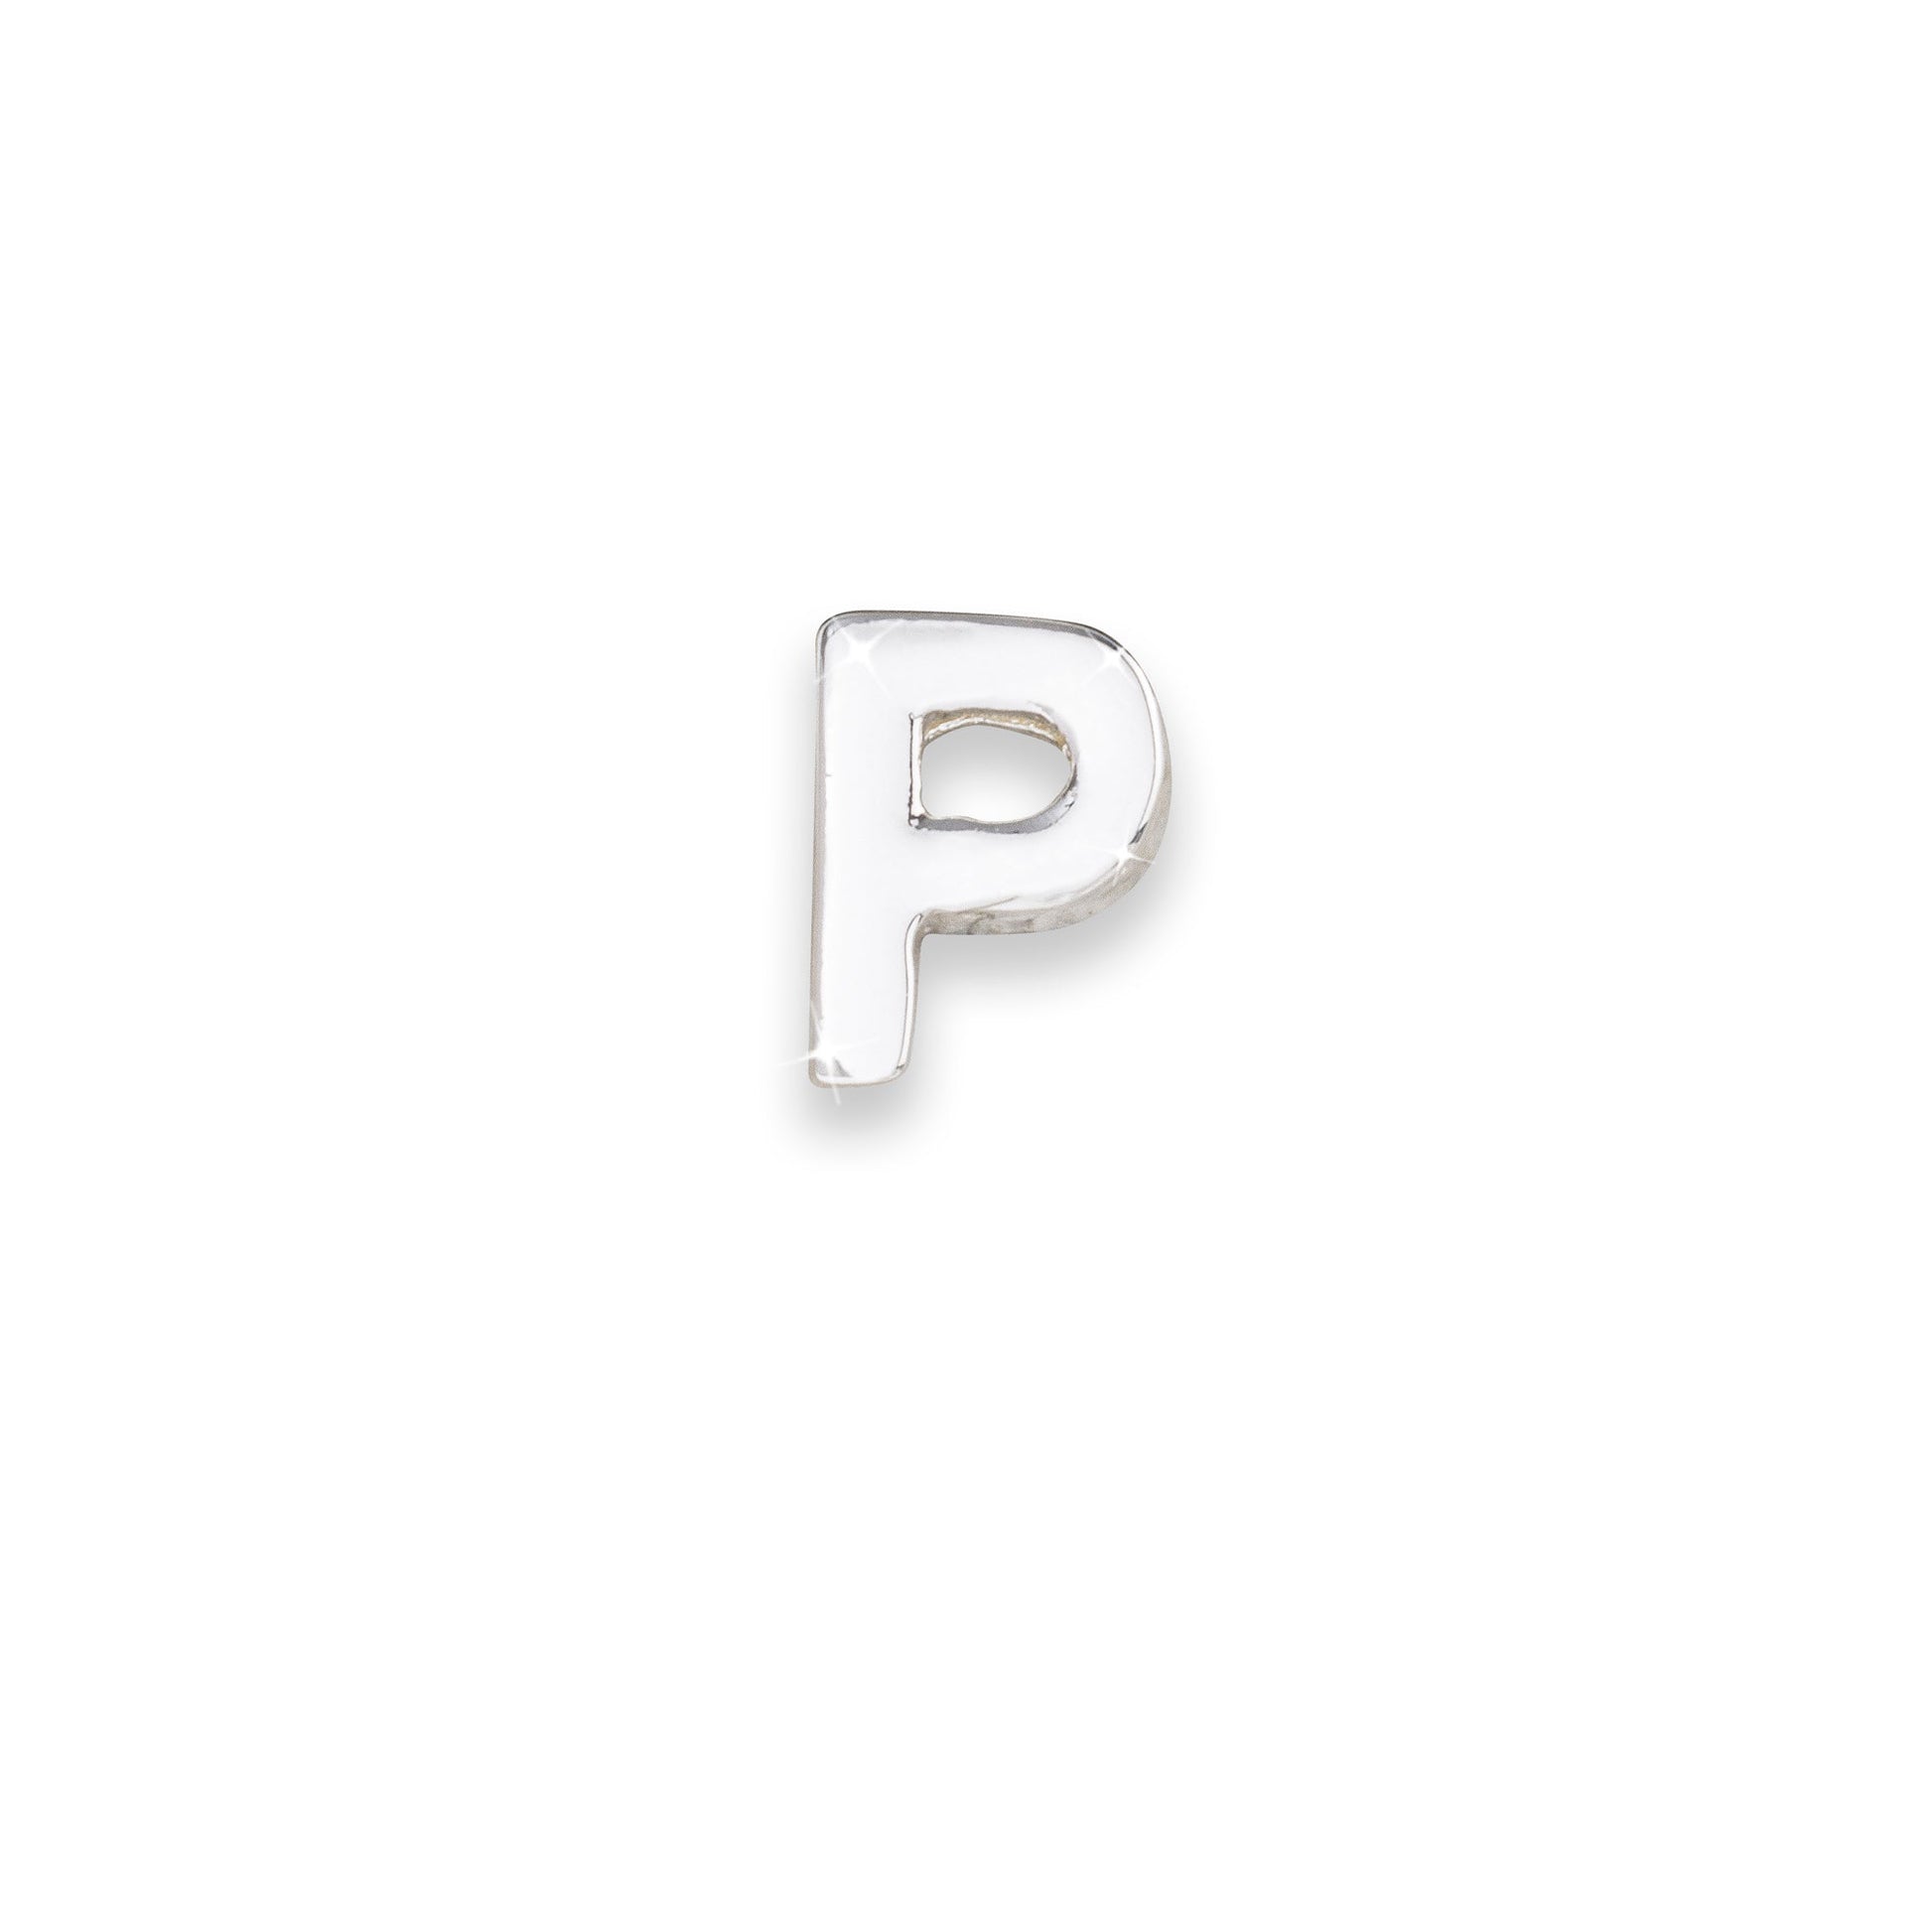 Silver letter P monogram charm for necklaces & bracelets